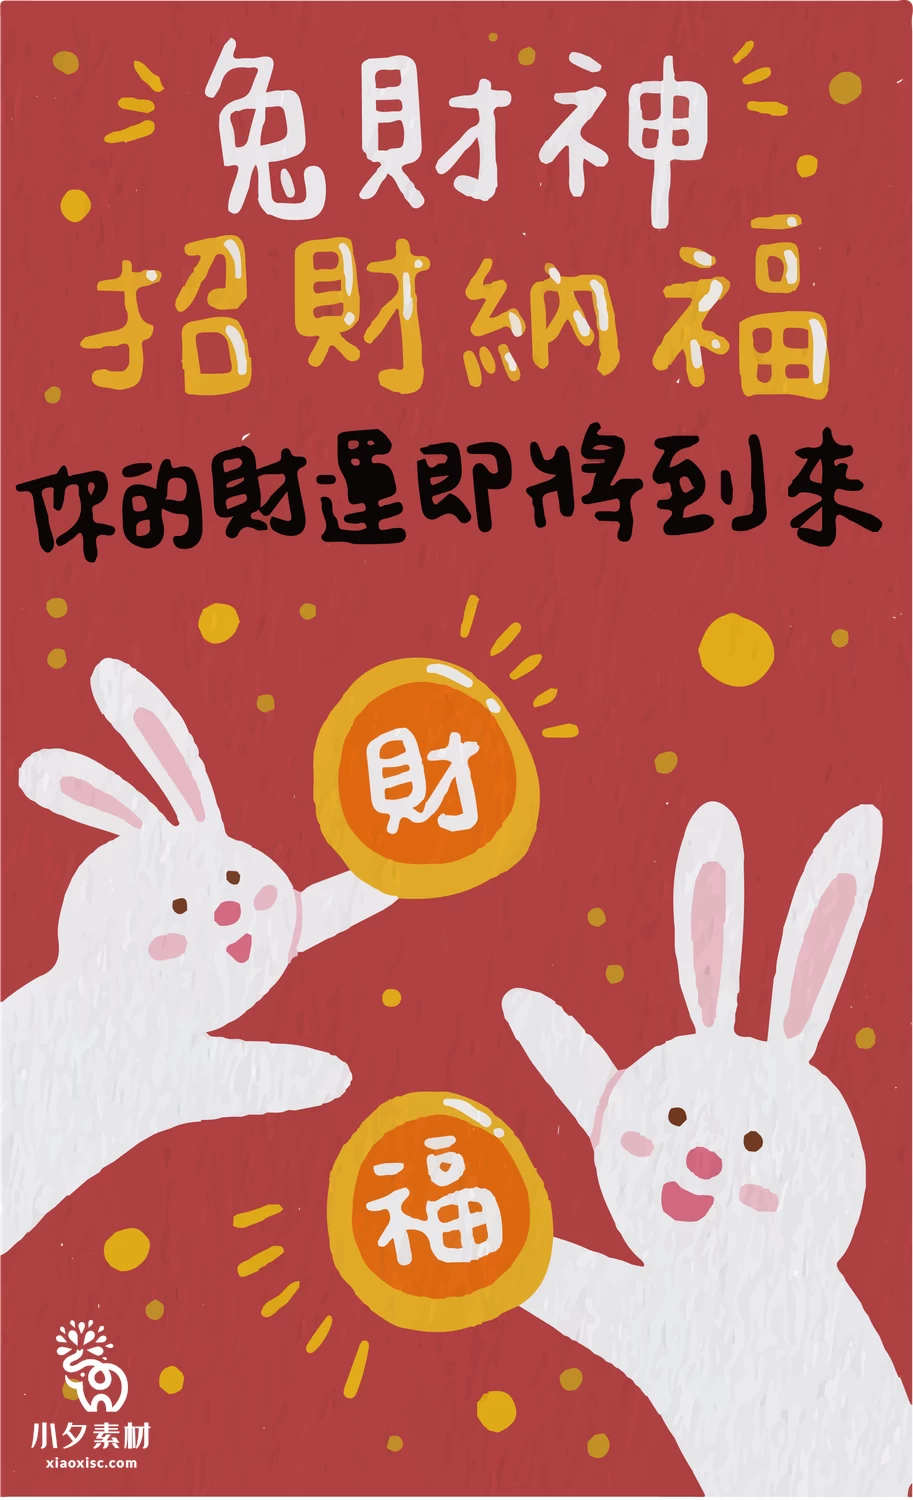 2023年兔年大吉新年红色喜庆好运暴富图案创意海报AI矢量设计素材【012】